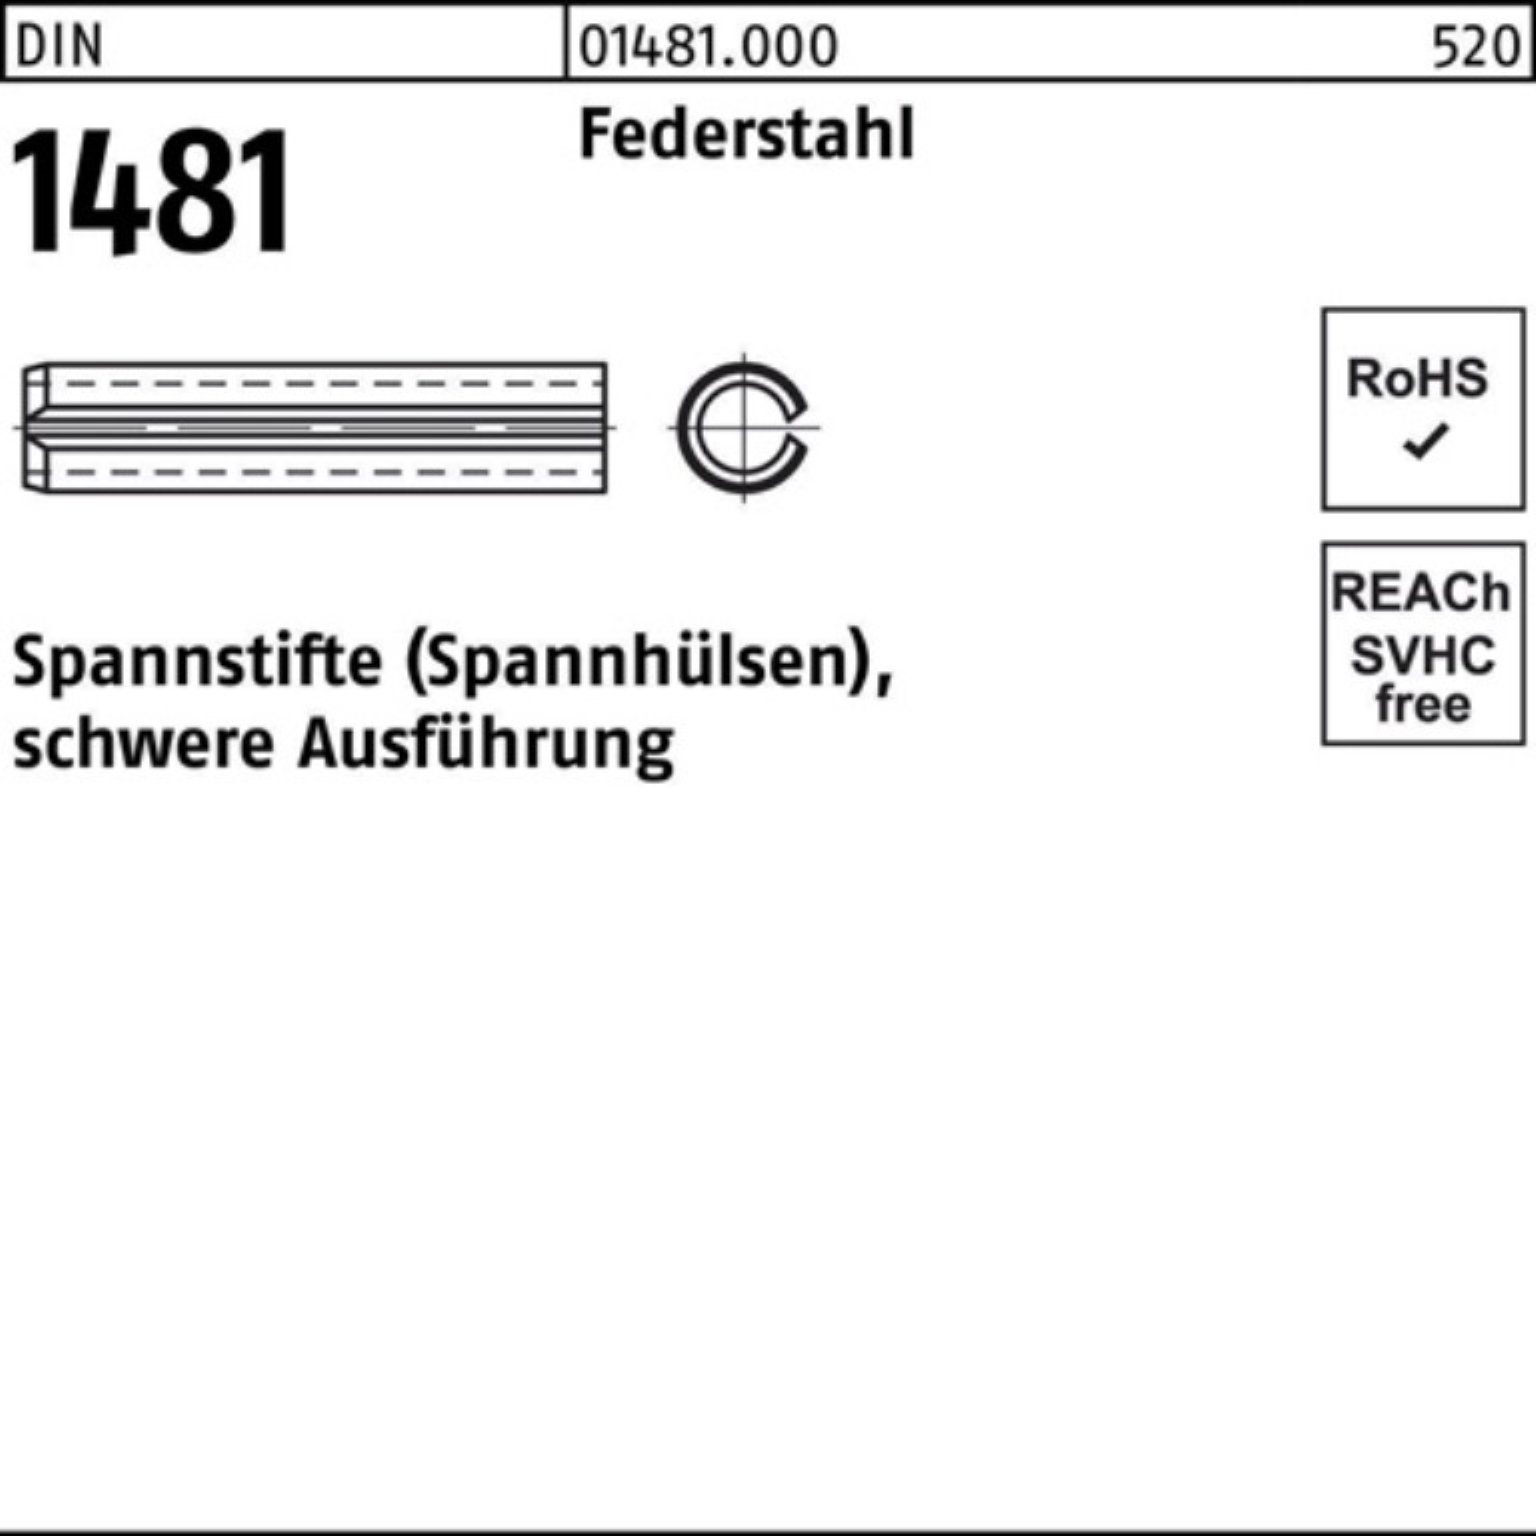 Reyher Spannstift 500er Pack 5 Spannstift Ausführung 1481 Federstahl DIN schwere 24 10x